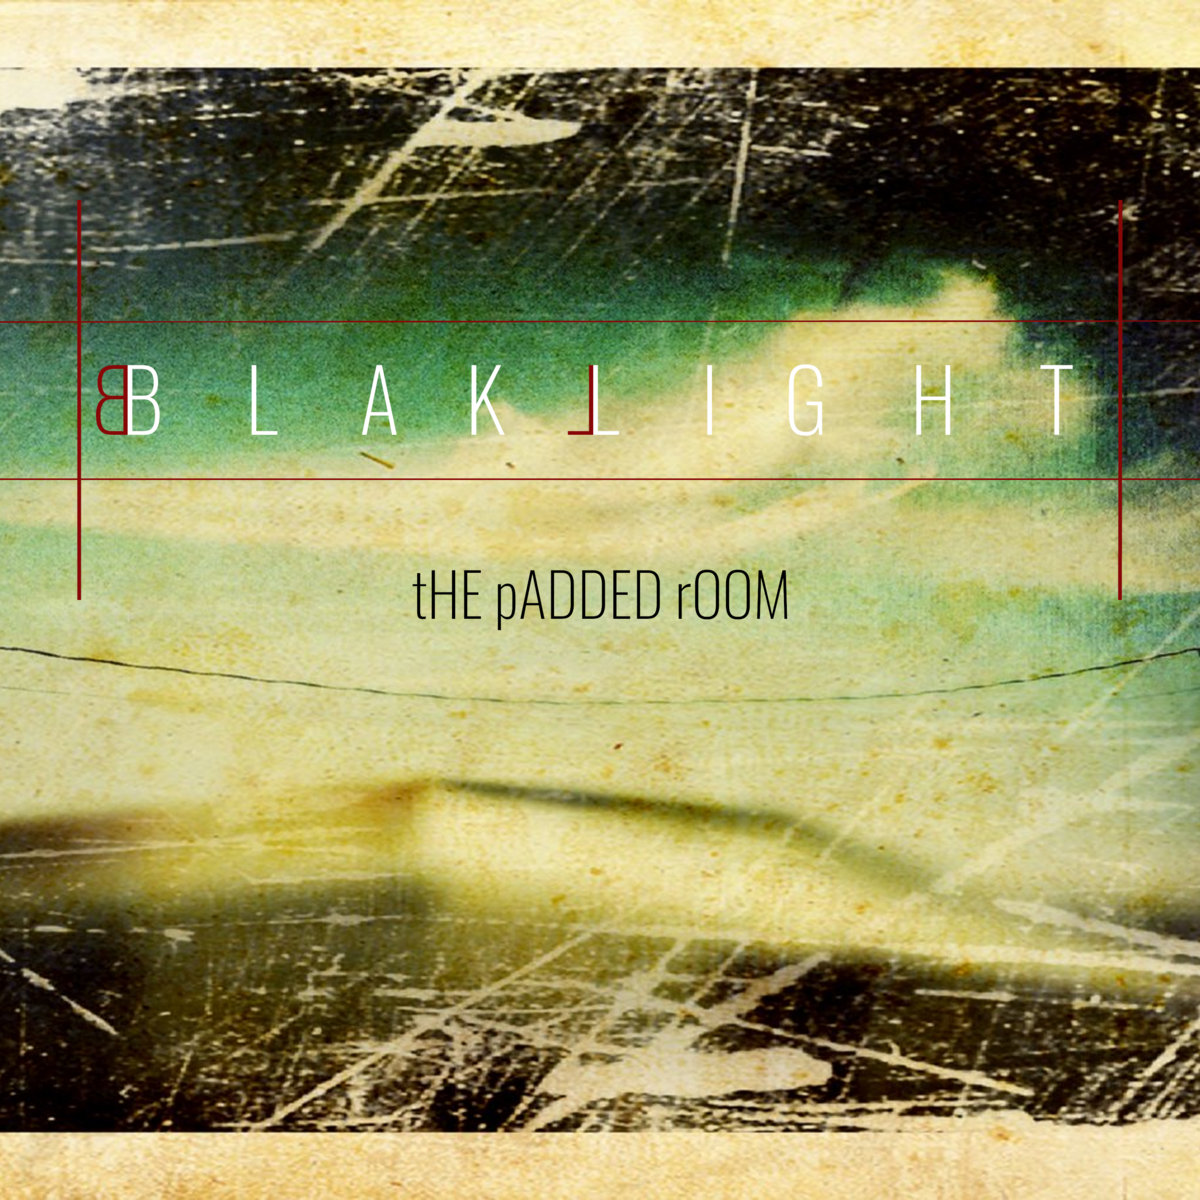 The Padded Room album art by Blaklight